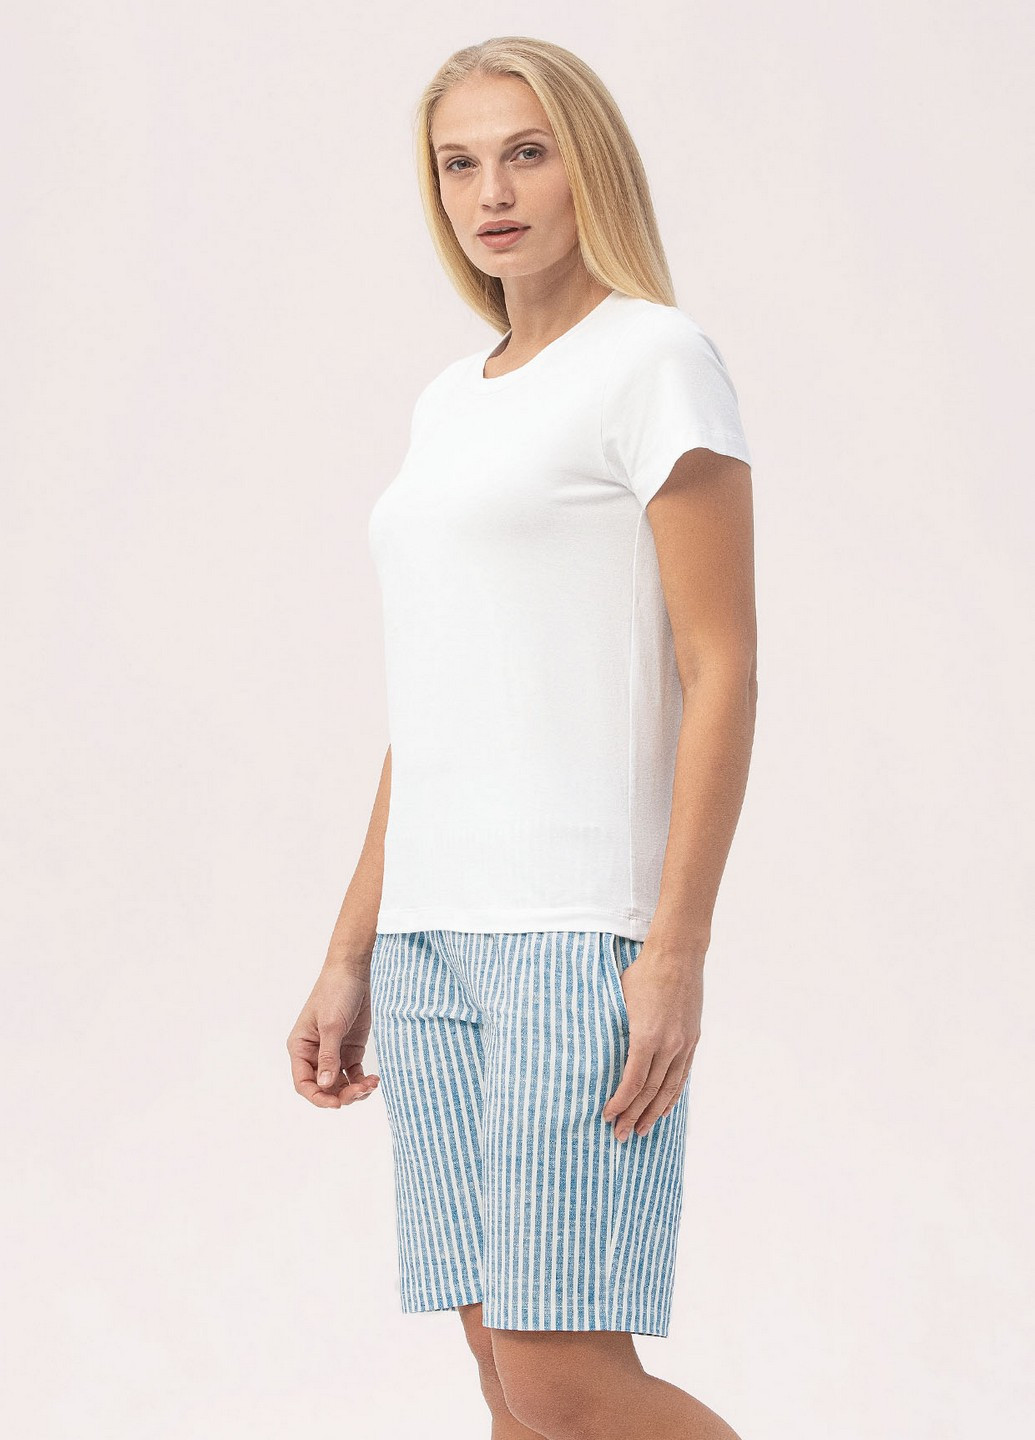 Комбинированная всесезон пижама женская (футболка+шорты) Roksana 1385